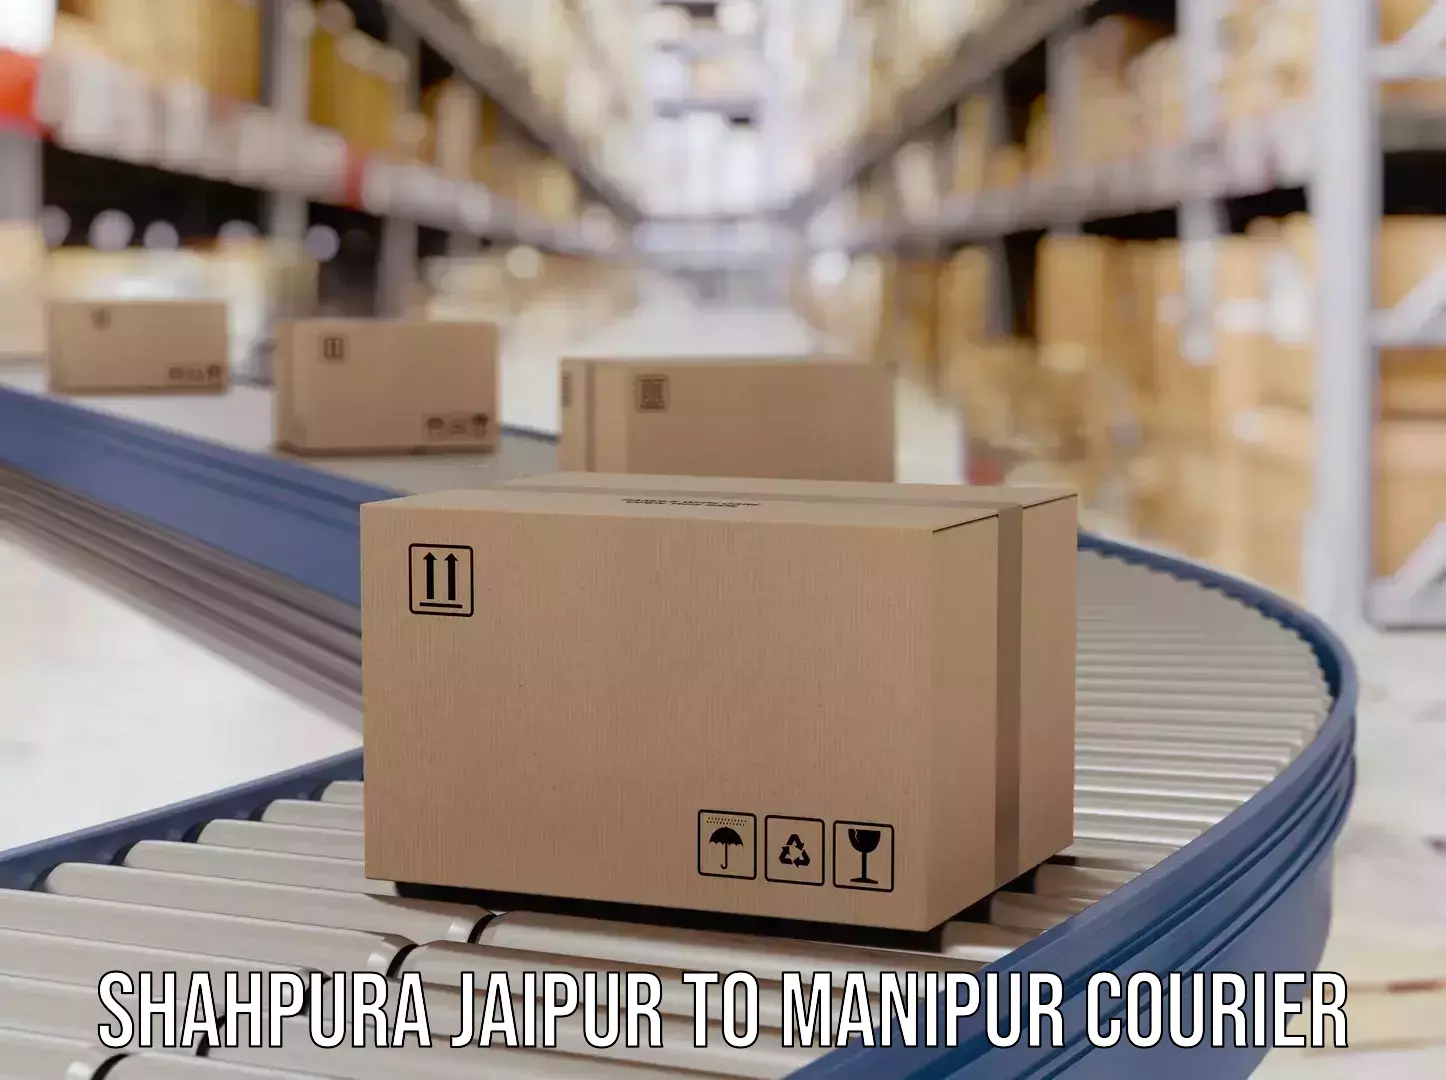 Automated parcel services Shahpura Jaipur to Jiribam